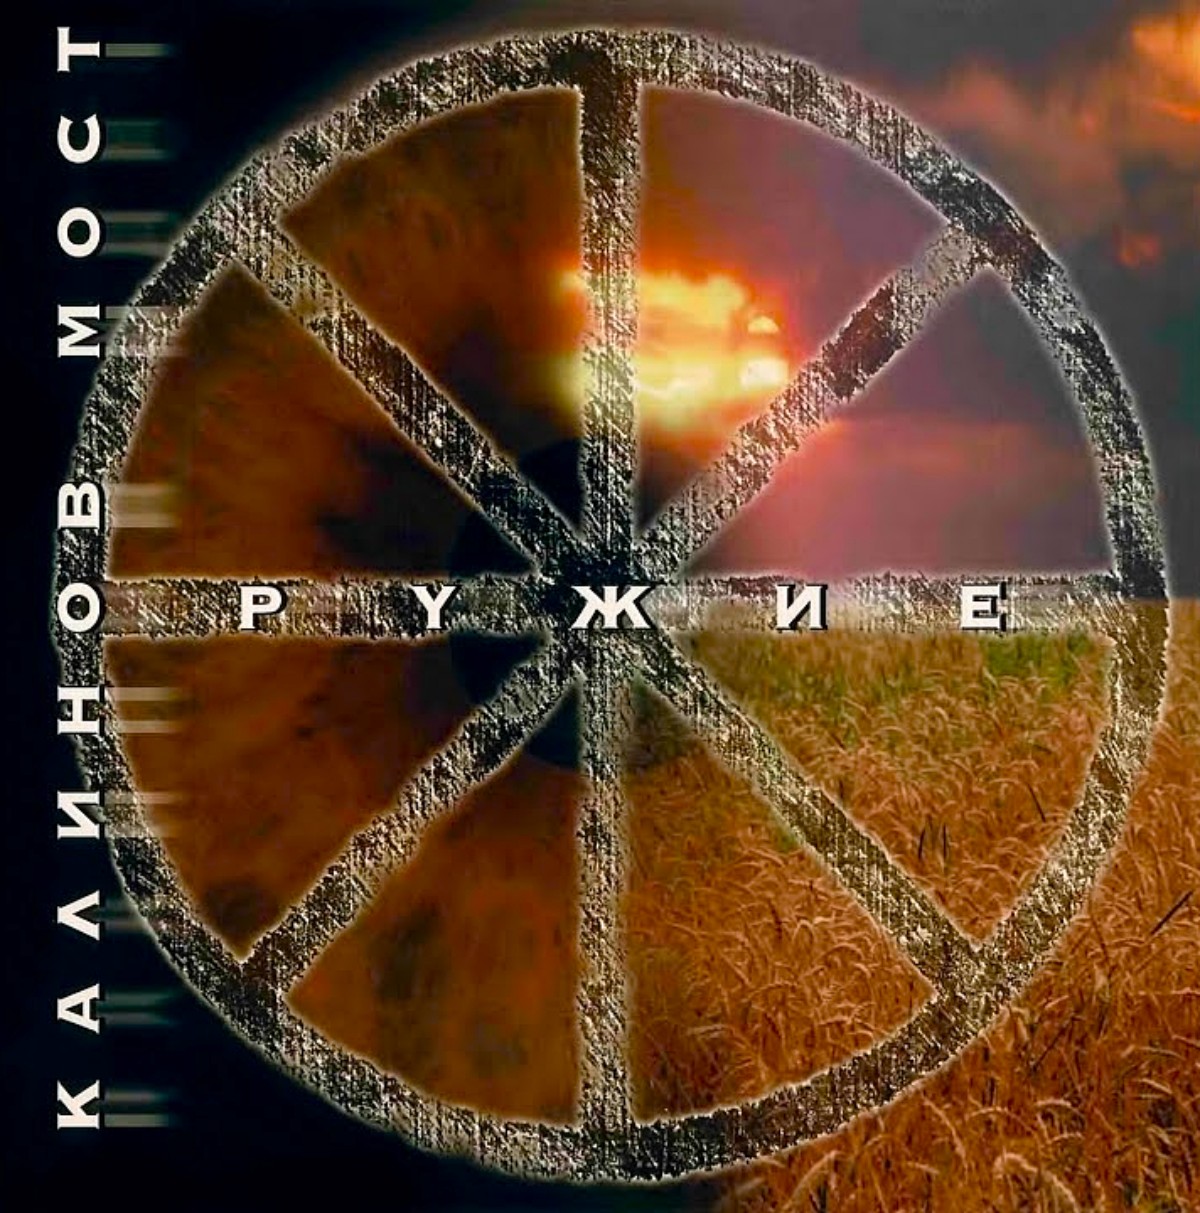 Couverture de l'album "Weapon" par Kalinov Most